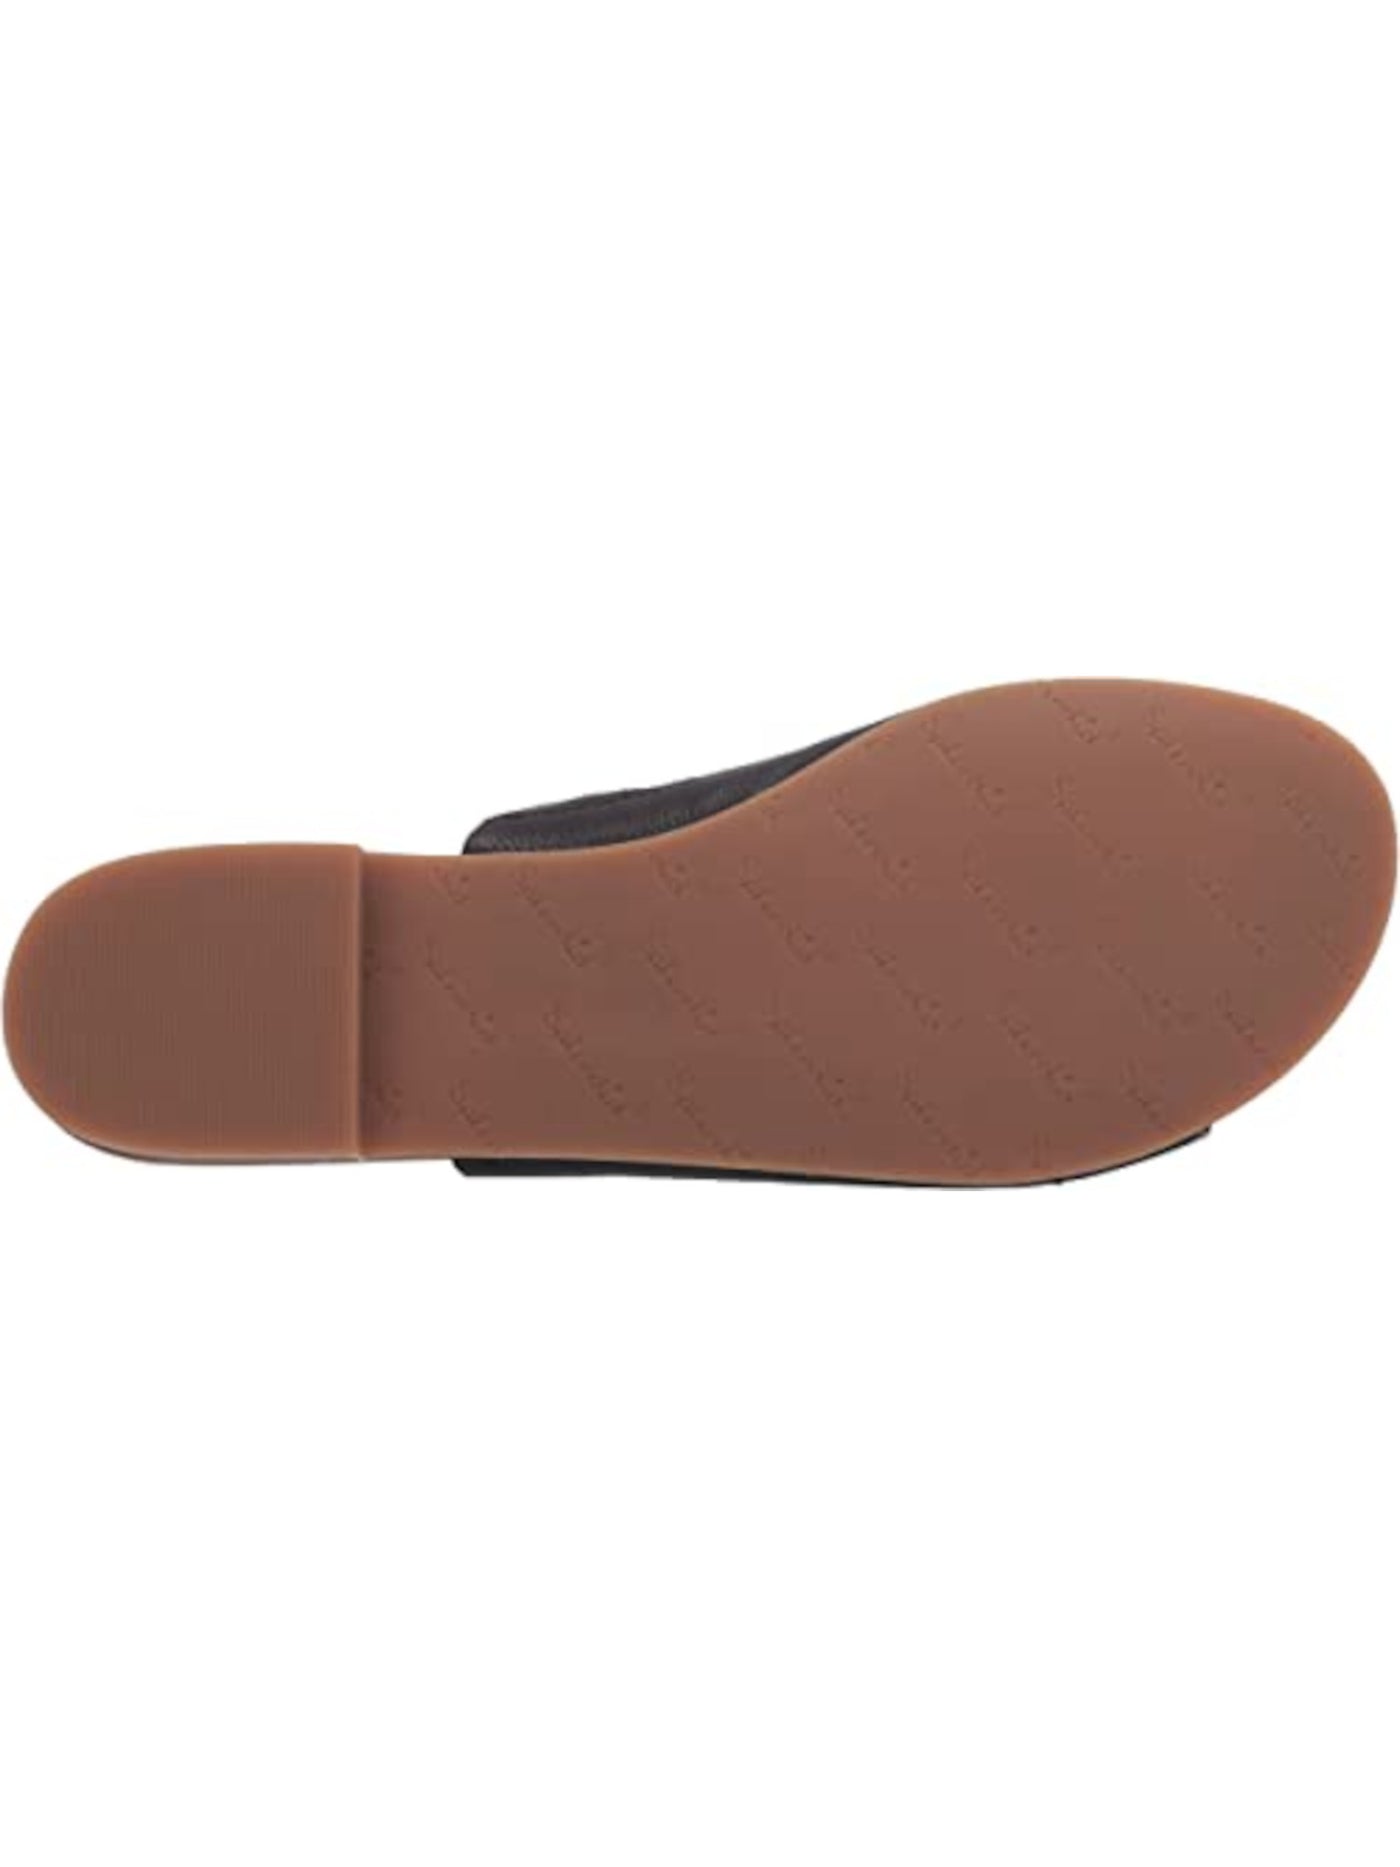 SPLENDID Womens Black Goring Mavis Round Toe Slip On Leather Slide Sandals Shoes M